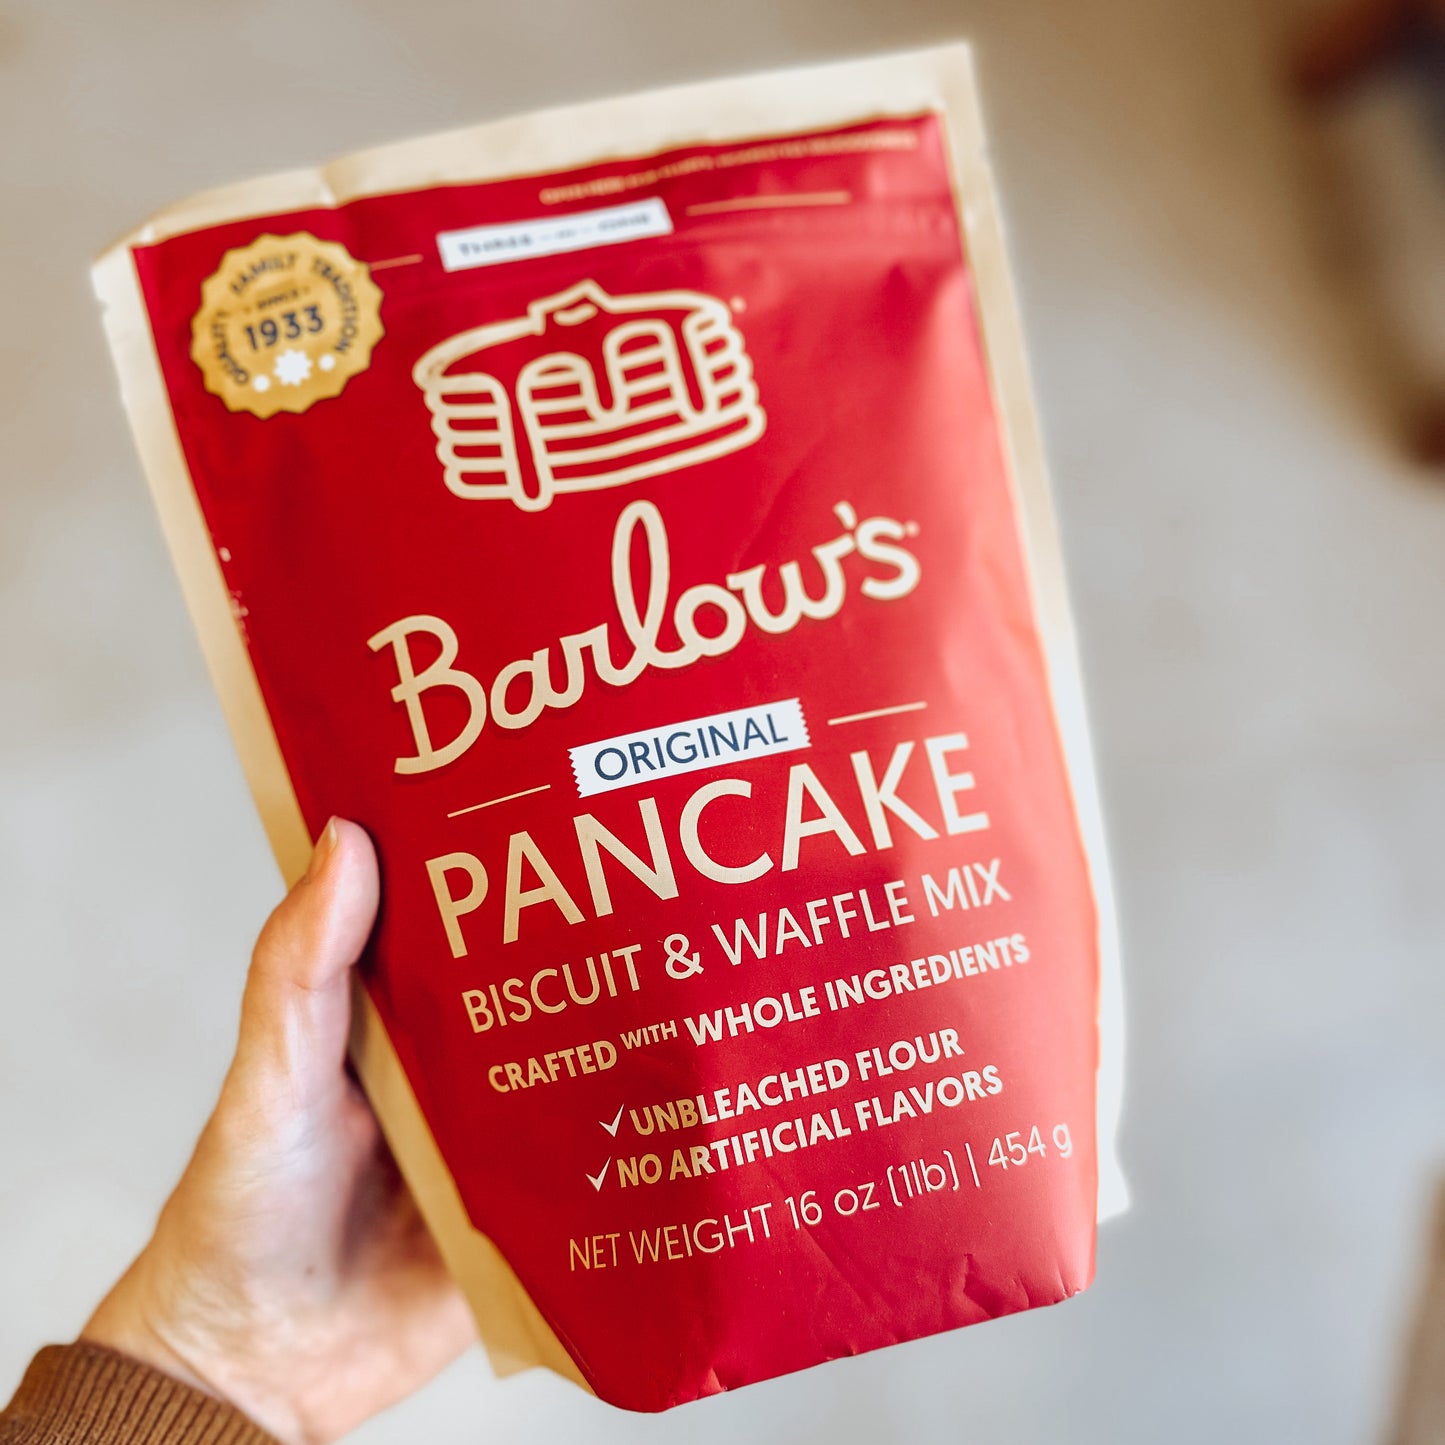 Barlow’s Pancake mix | made in GA